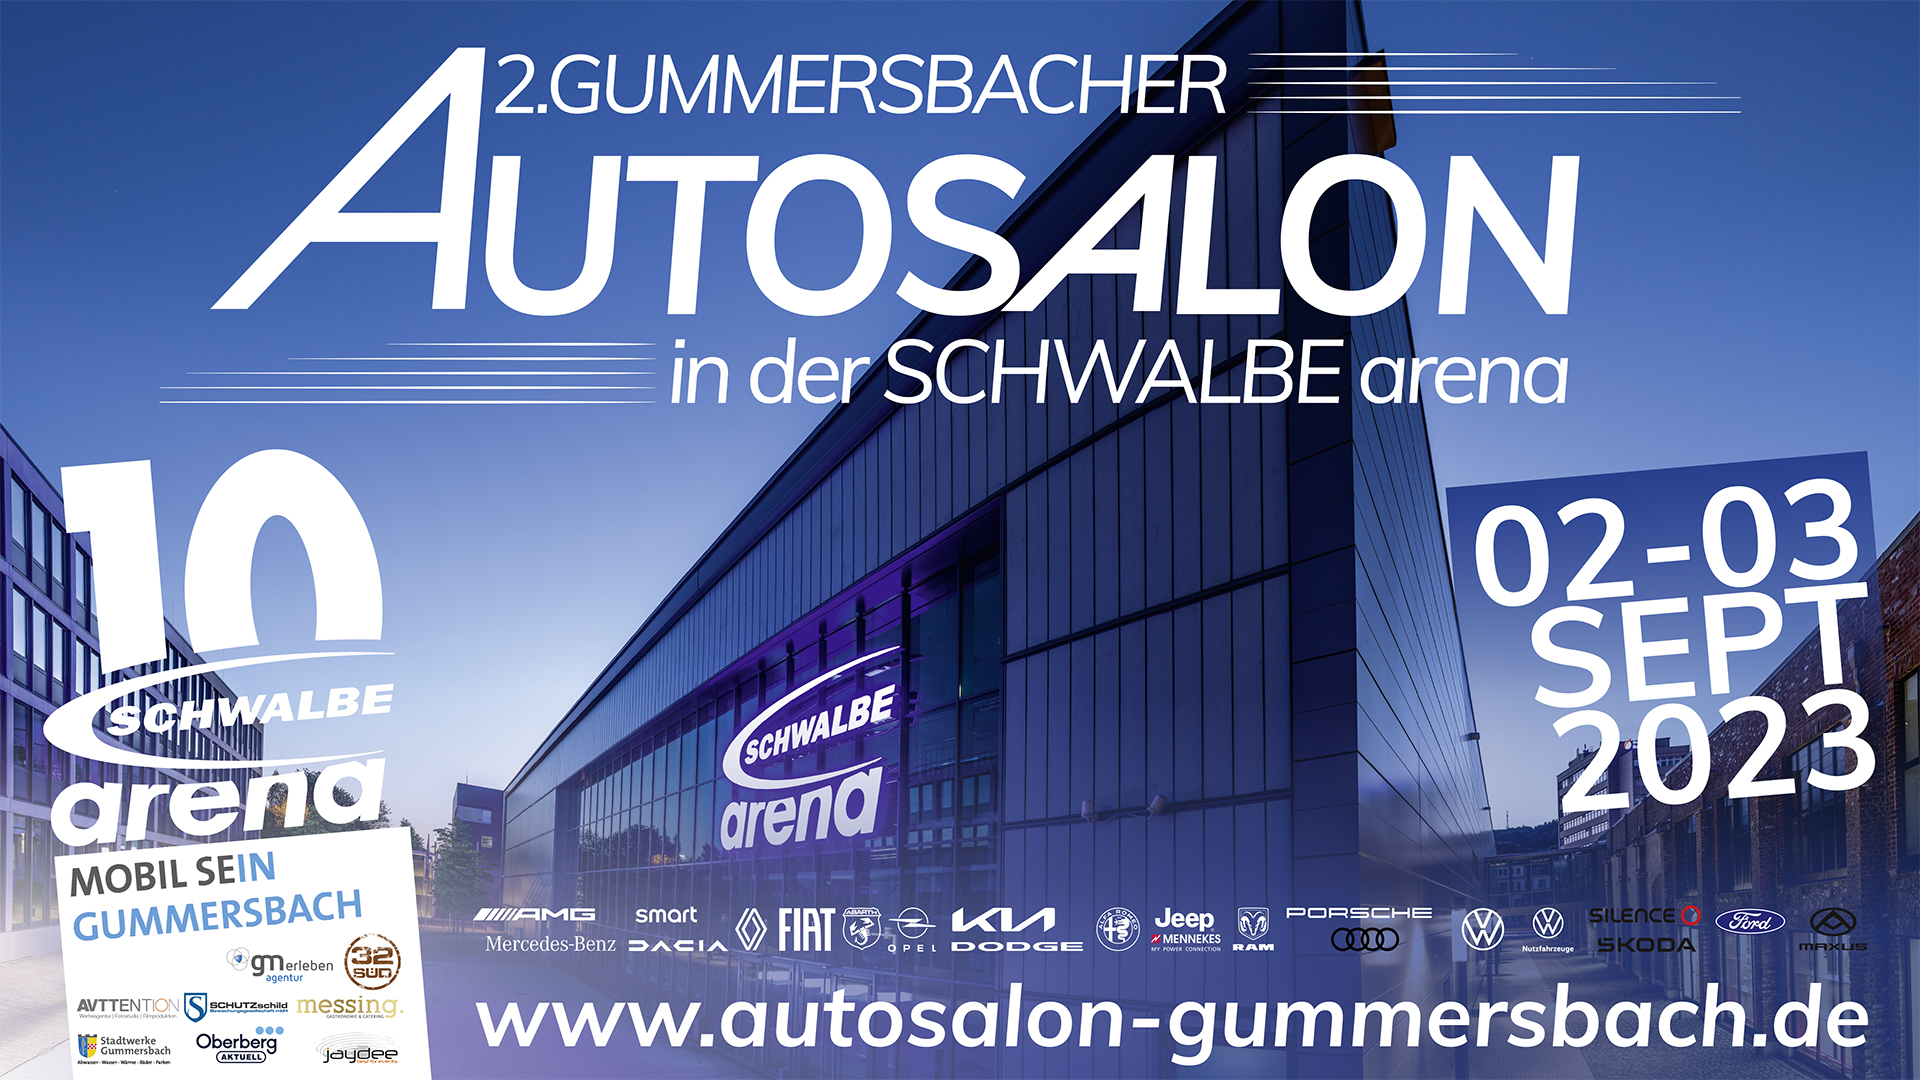 SCHWALBE arena | 2. Gummersbacher Autosalon